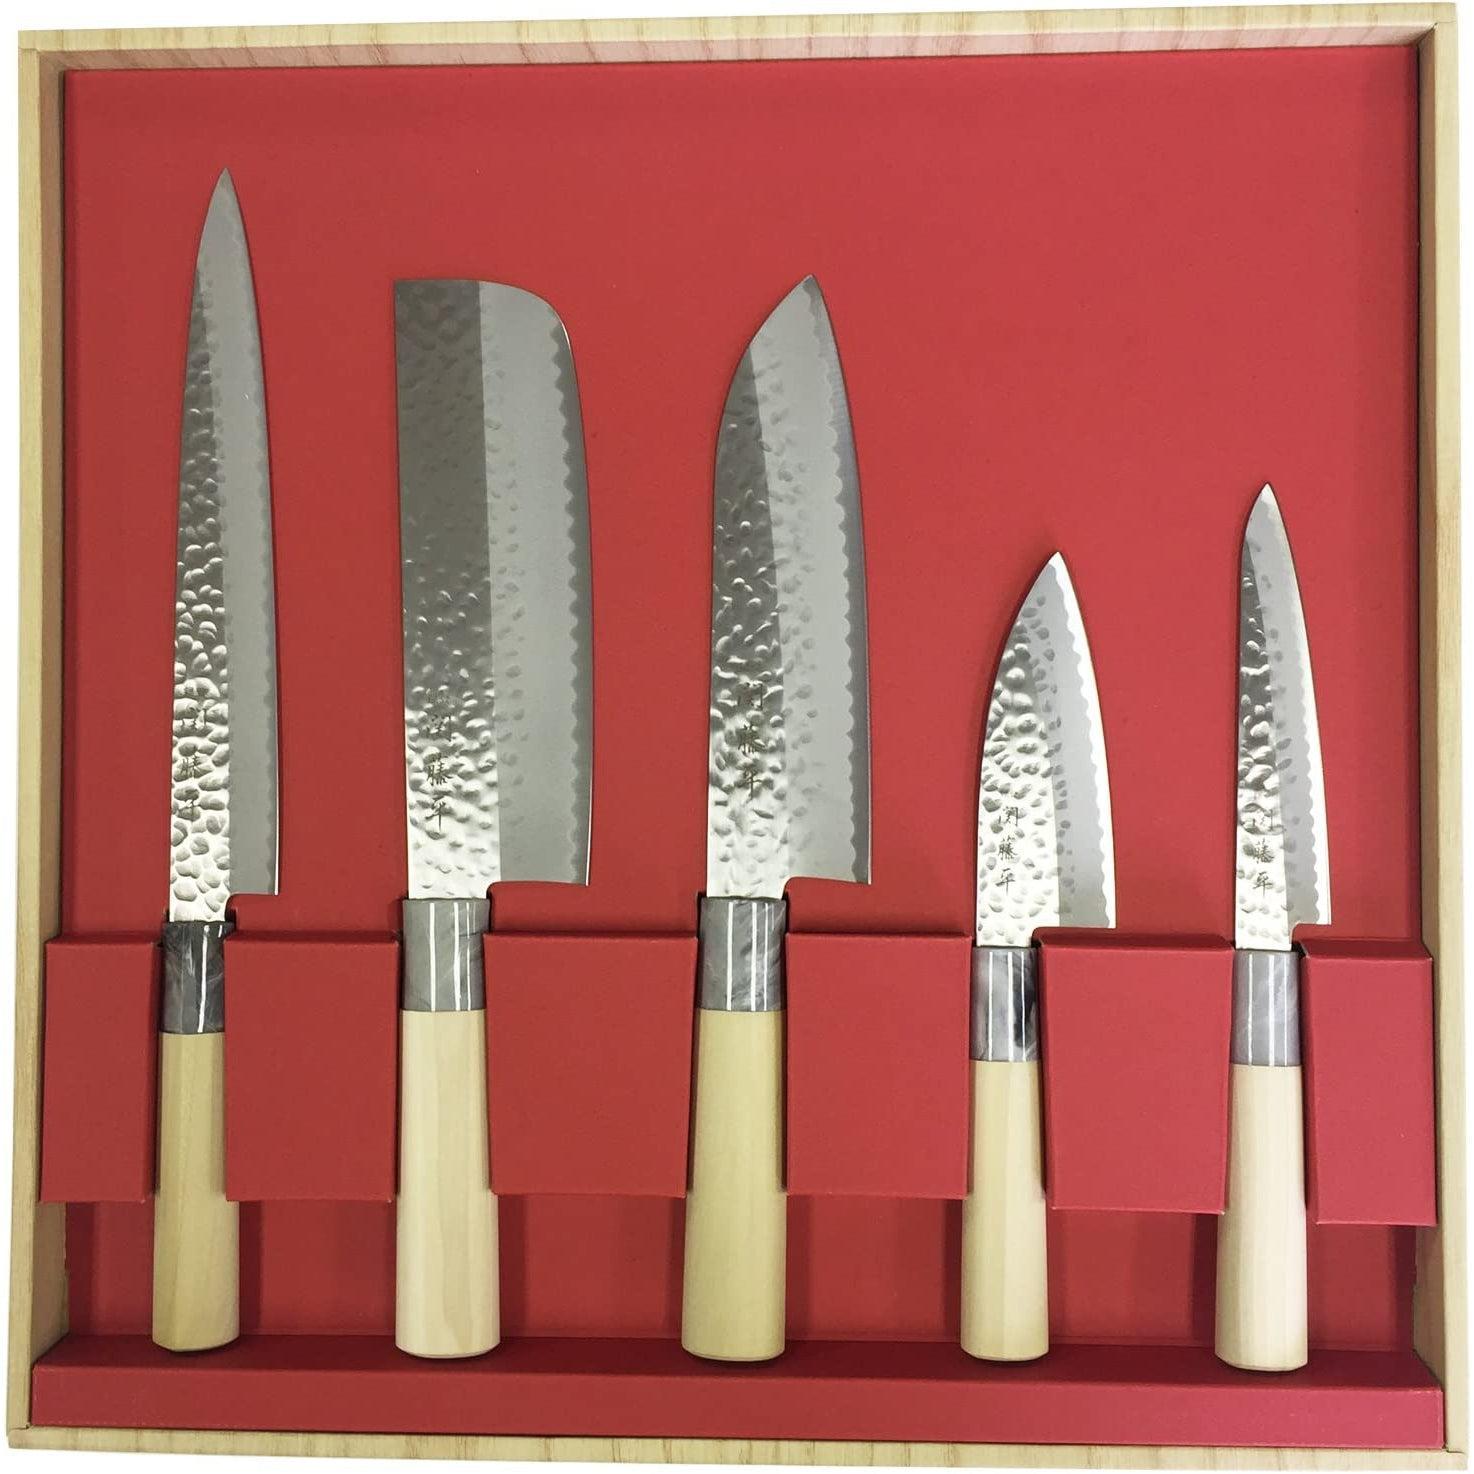 https://int.japanesetaste.com/cdn/shop/files/yaxell-japanese-knife-set-5-kitchen-knives-japanese-taste.jpg?v=1690847001&width=5760